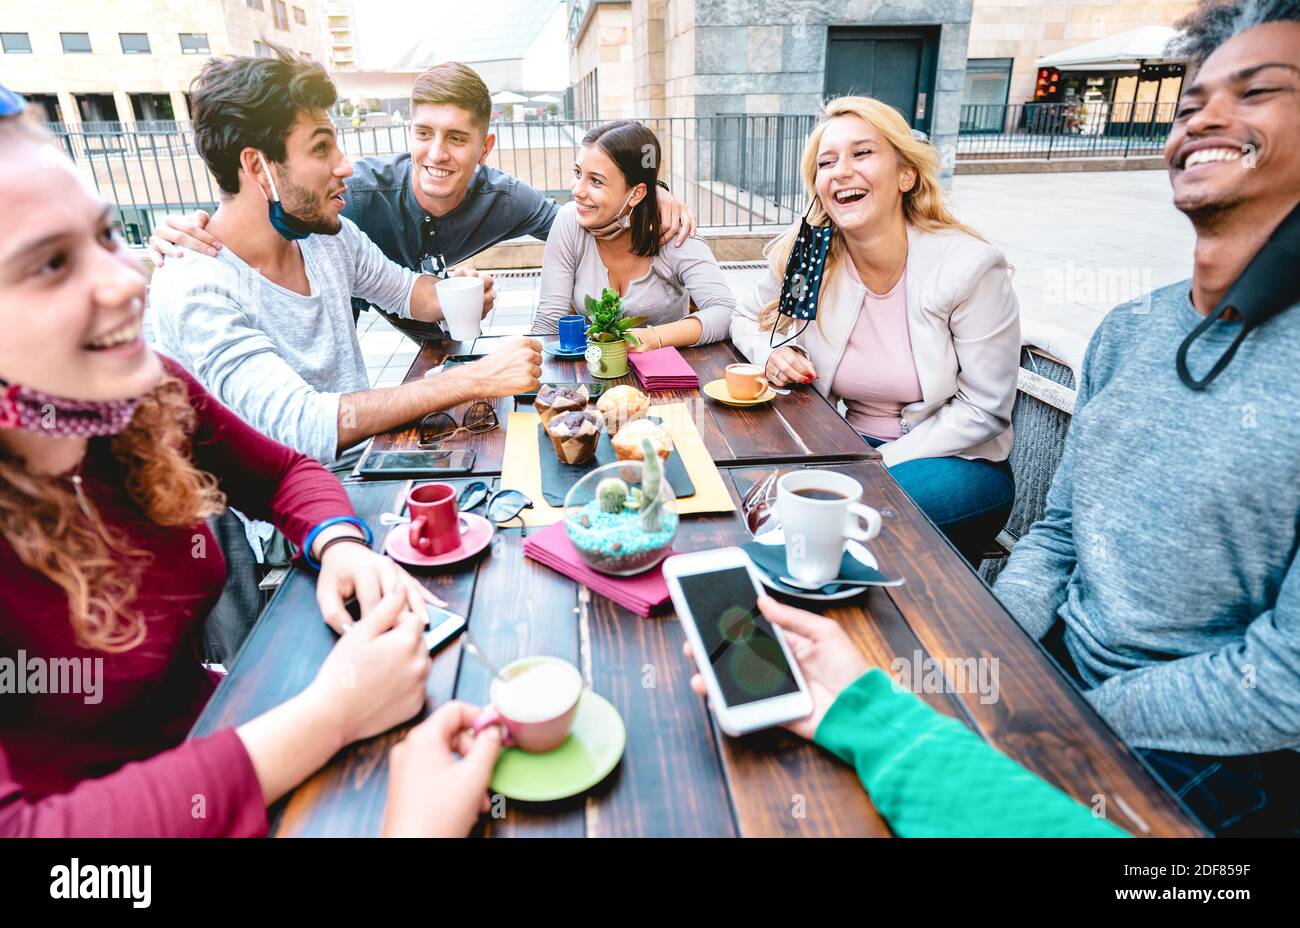 Freunde, die Spaß haben, Cappuccino im Kaffeehaus zu trinken - Junge Leute Gemeinsames Gespräch in der Cafeteria des Restaurants - Neues normales Lifestyle-Konzept Stockfoto